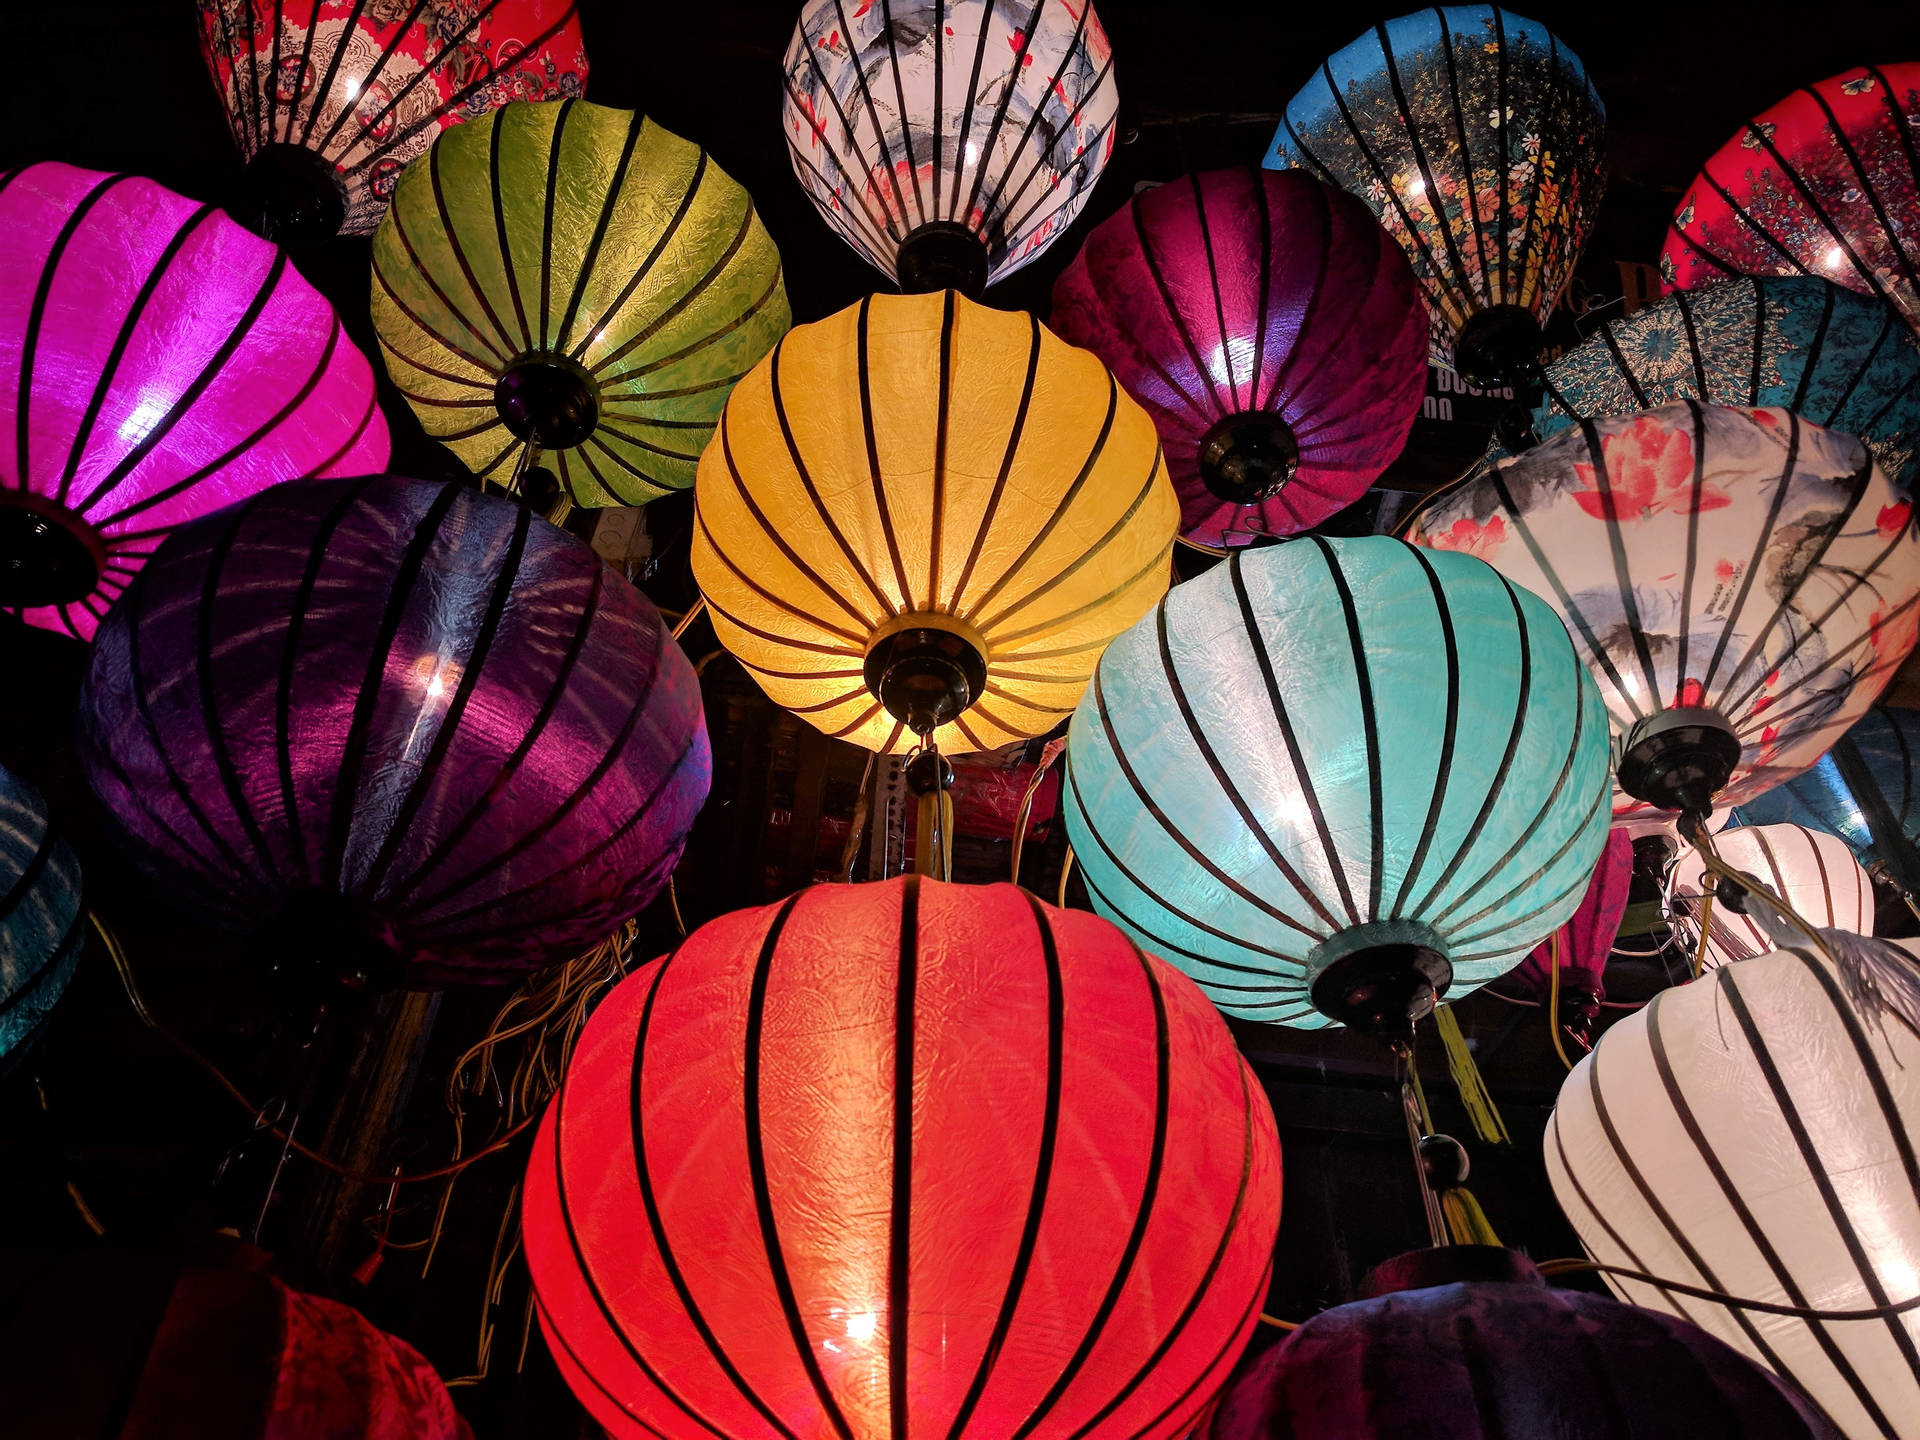 Illuminating Chinese Lantern In The Dark